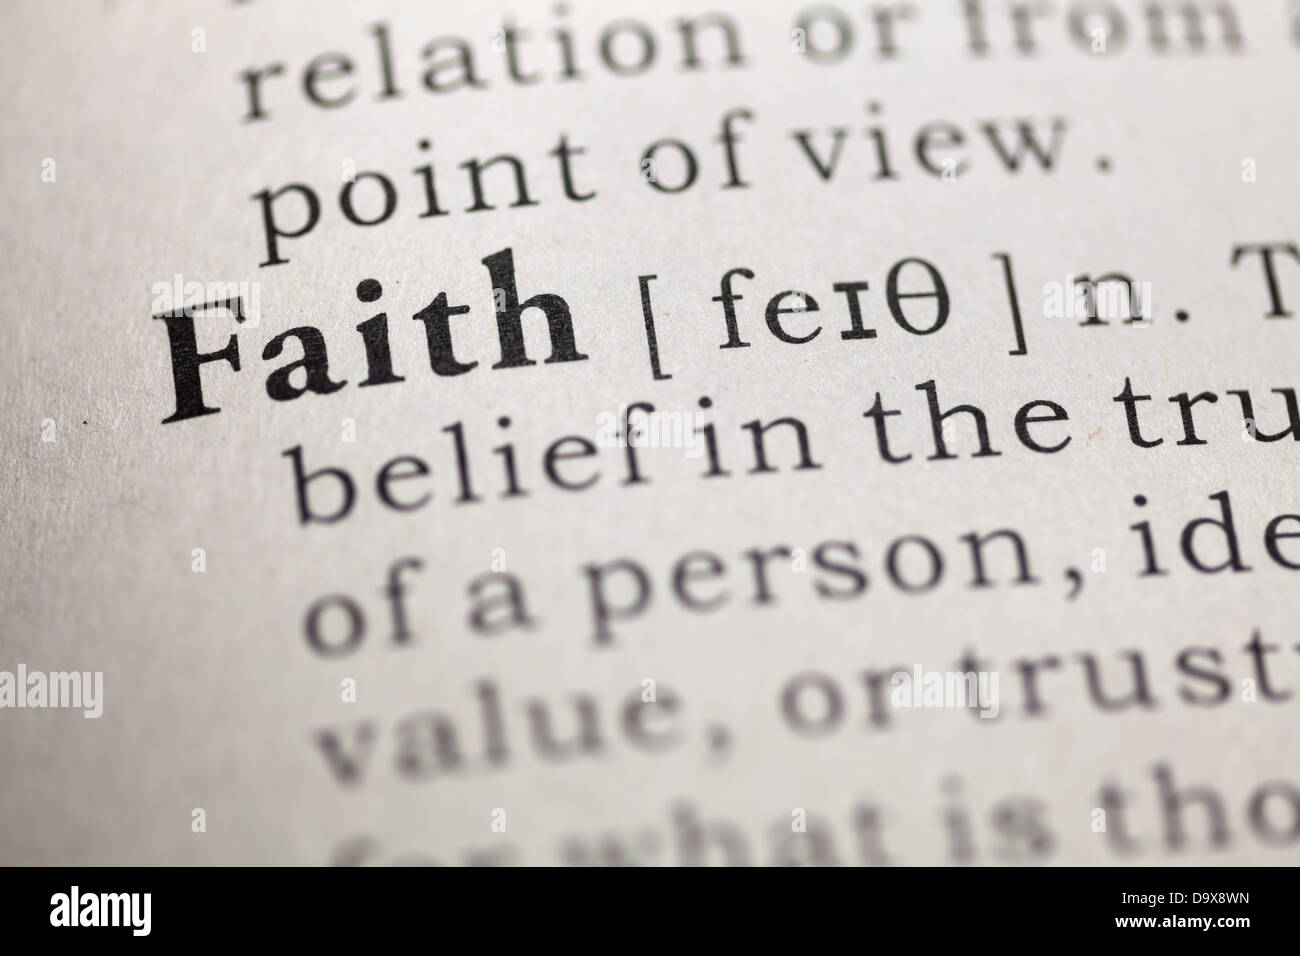 Definición de diccionario de la palabra "fe". Foto de stock